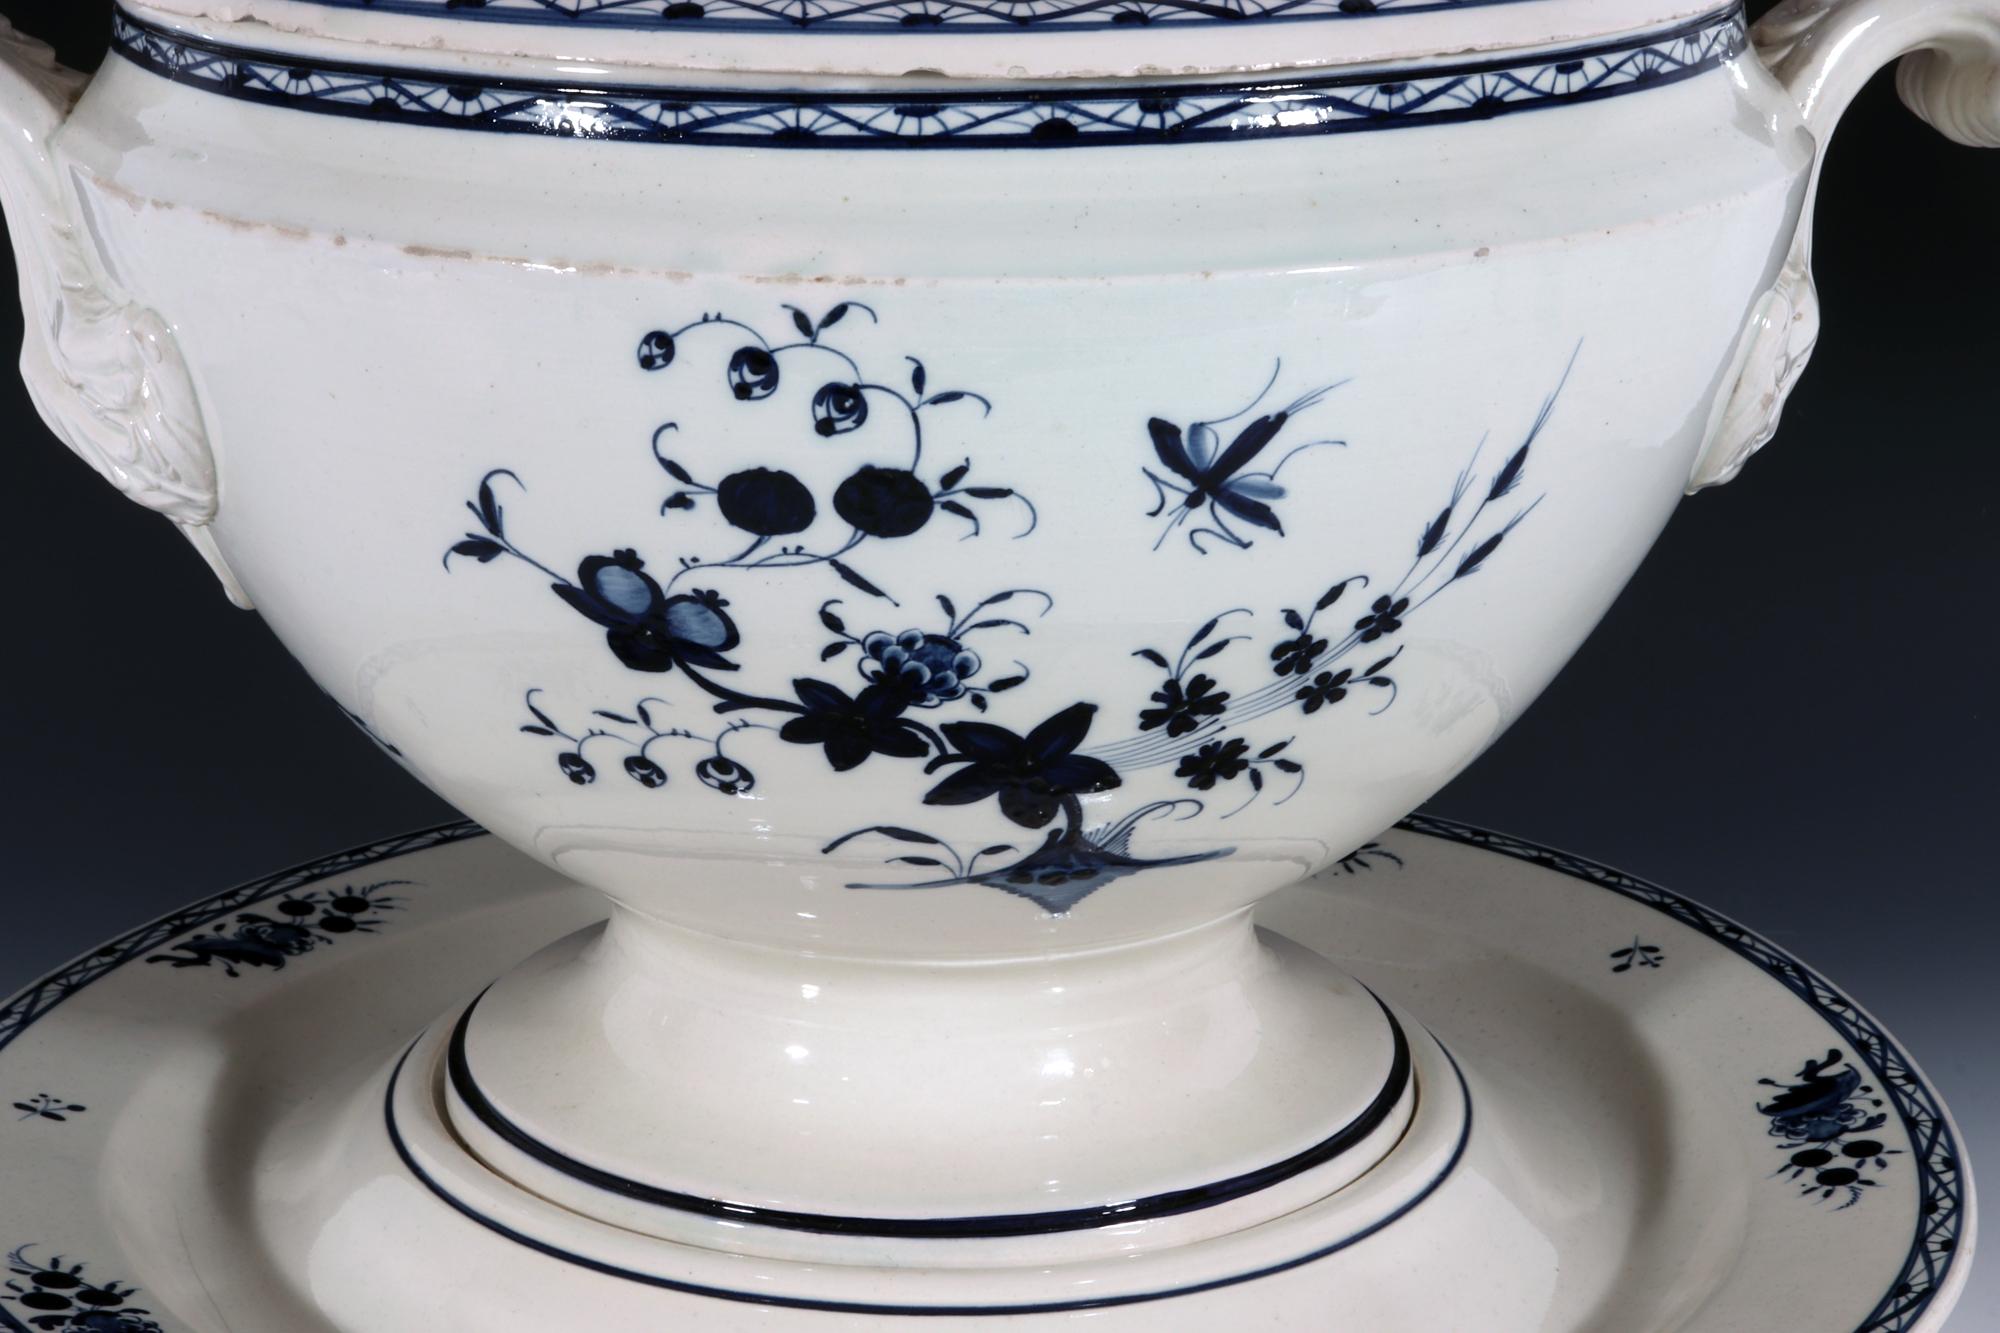 Continental Pottery Große Suppenterrine, Deckel & Ständer,
Nimy-Fabrik, Belgien,
Anfang des 19. Jahrhunderts.

Die große runde Terrine, der Deckel und der Ständer sind in Unterglasurblau mit floralen Mustern im chinesischen Stil bemalt.  Auf der